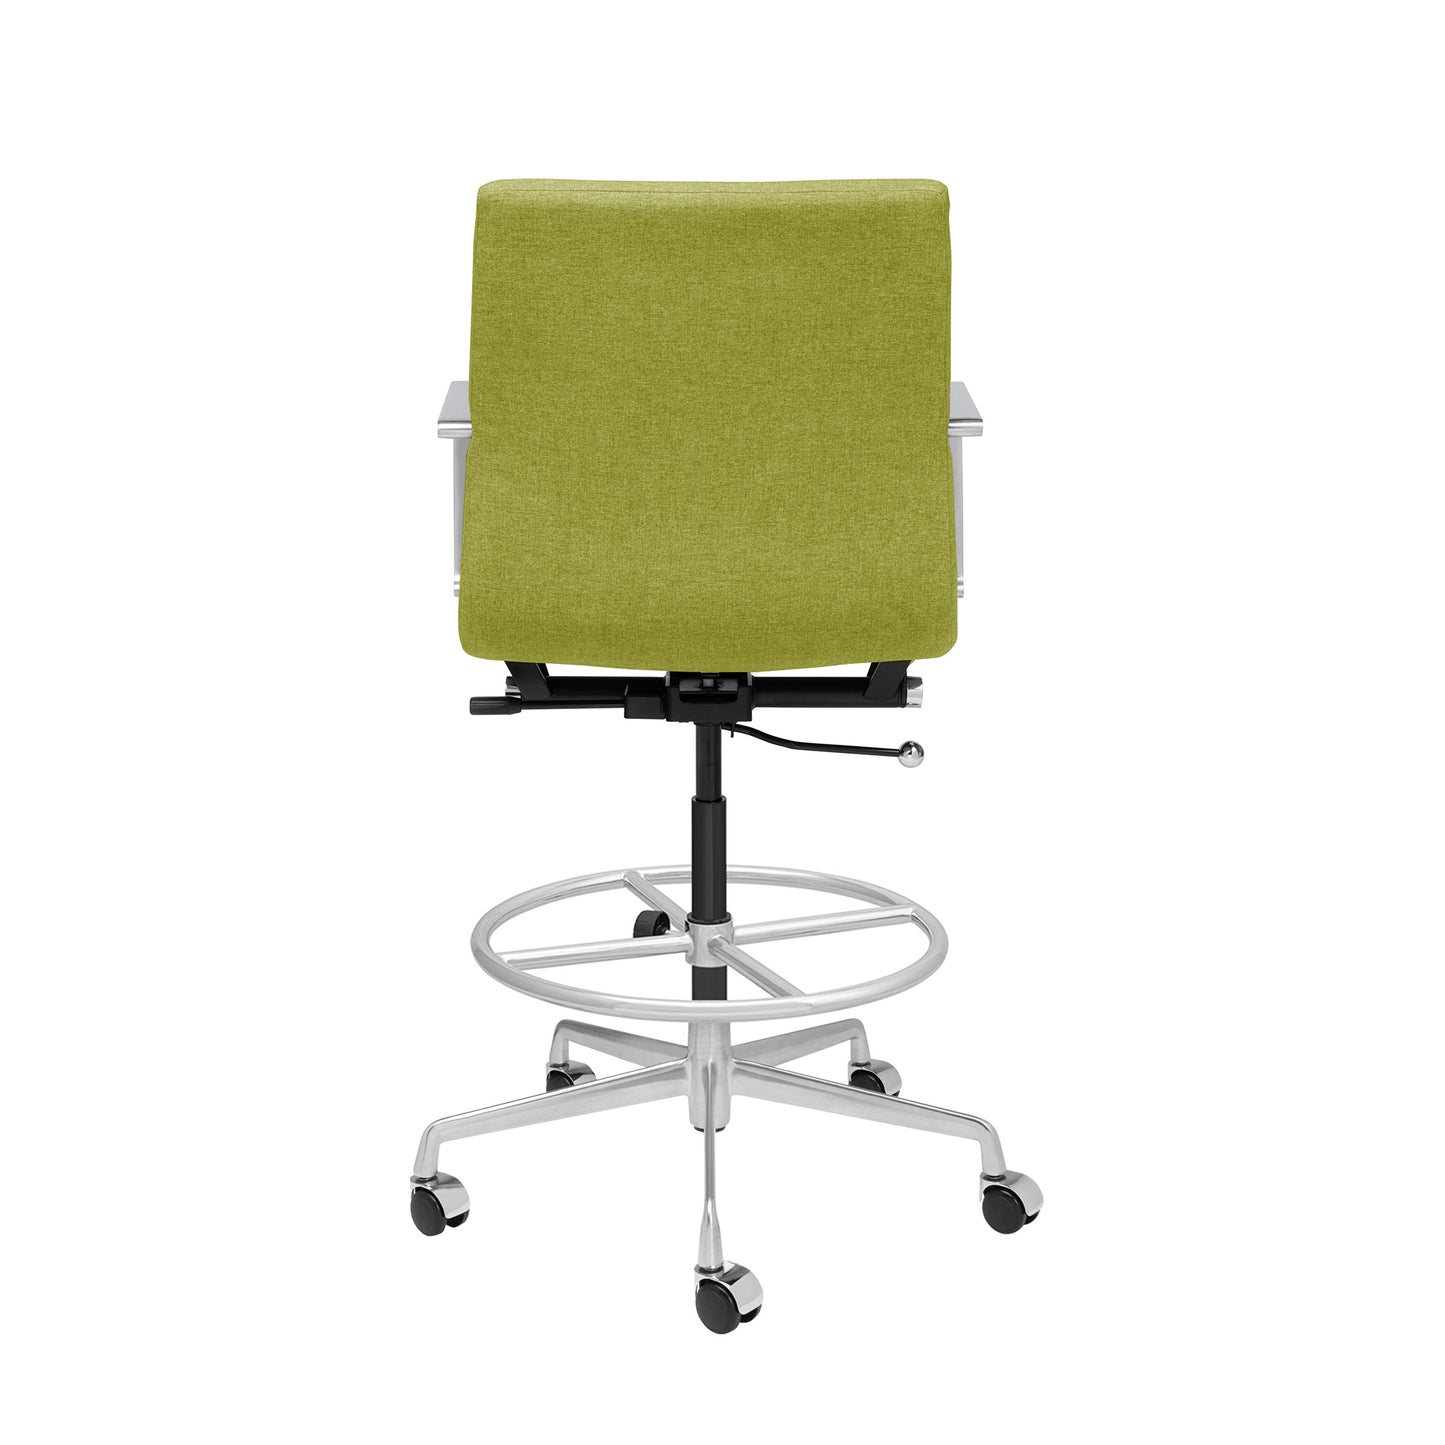 SHIPS MAY 7TH - SOHO II Ribbed Drafting Chair (Green Fabric)